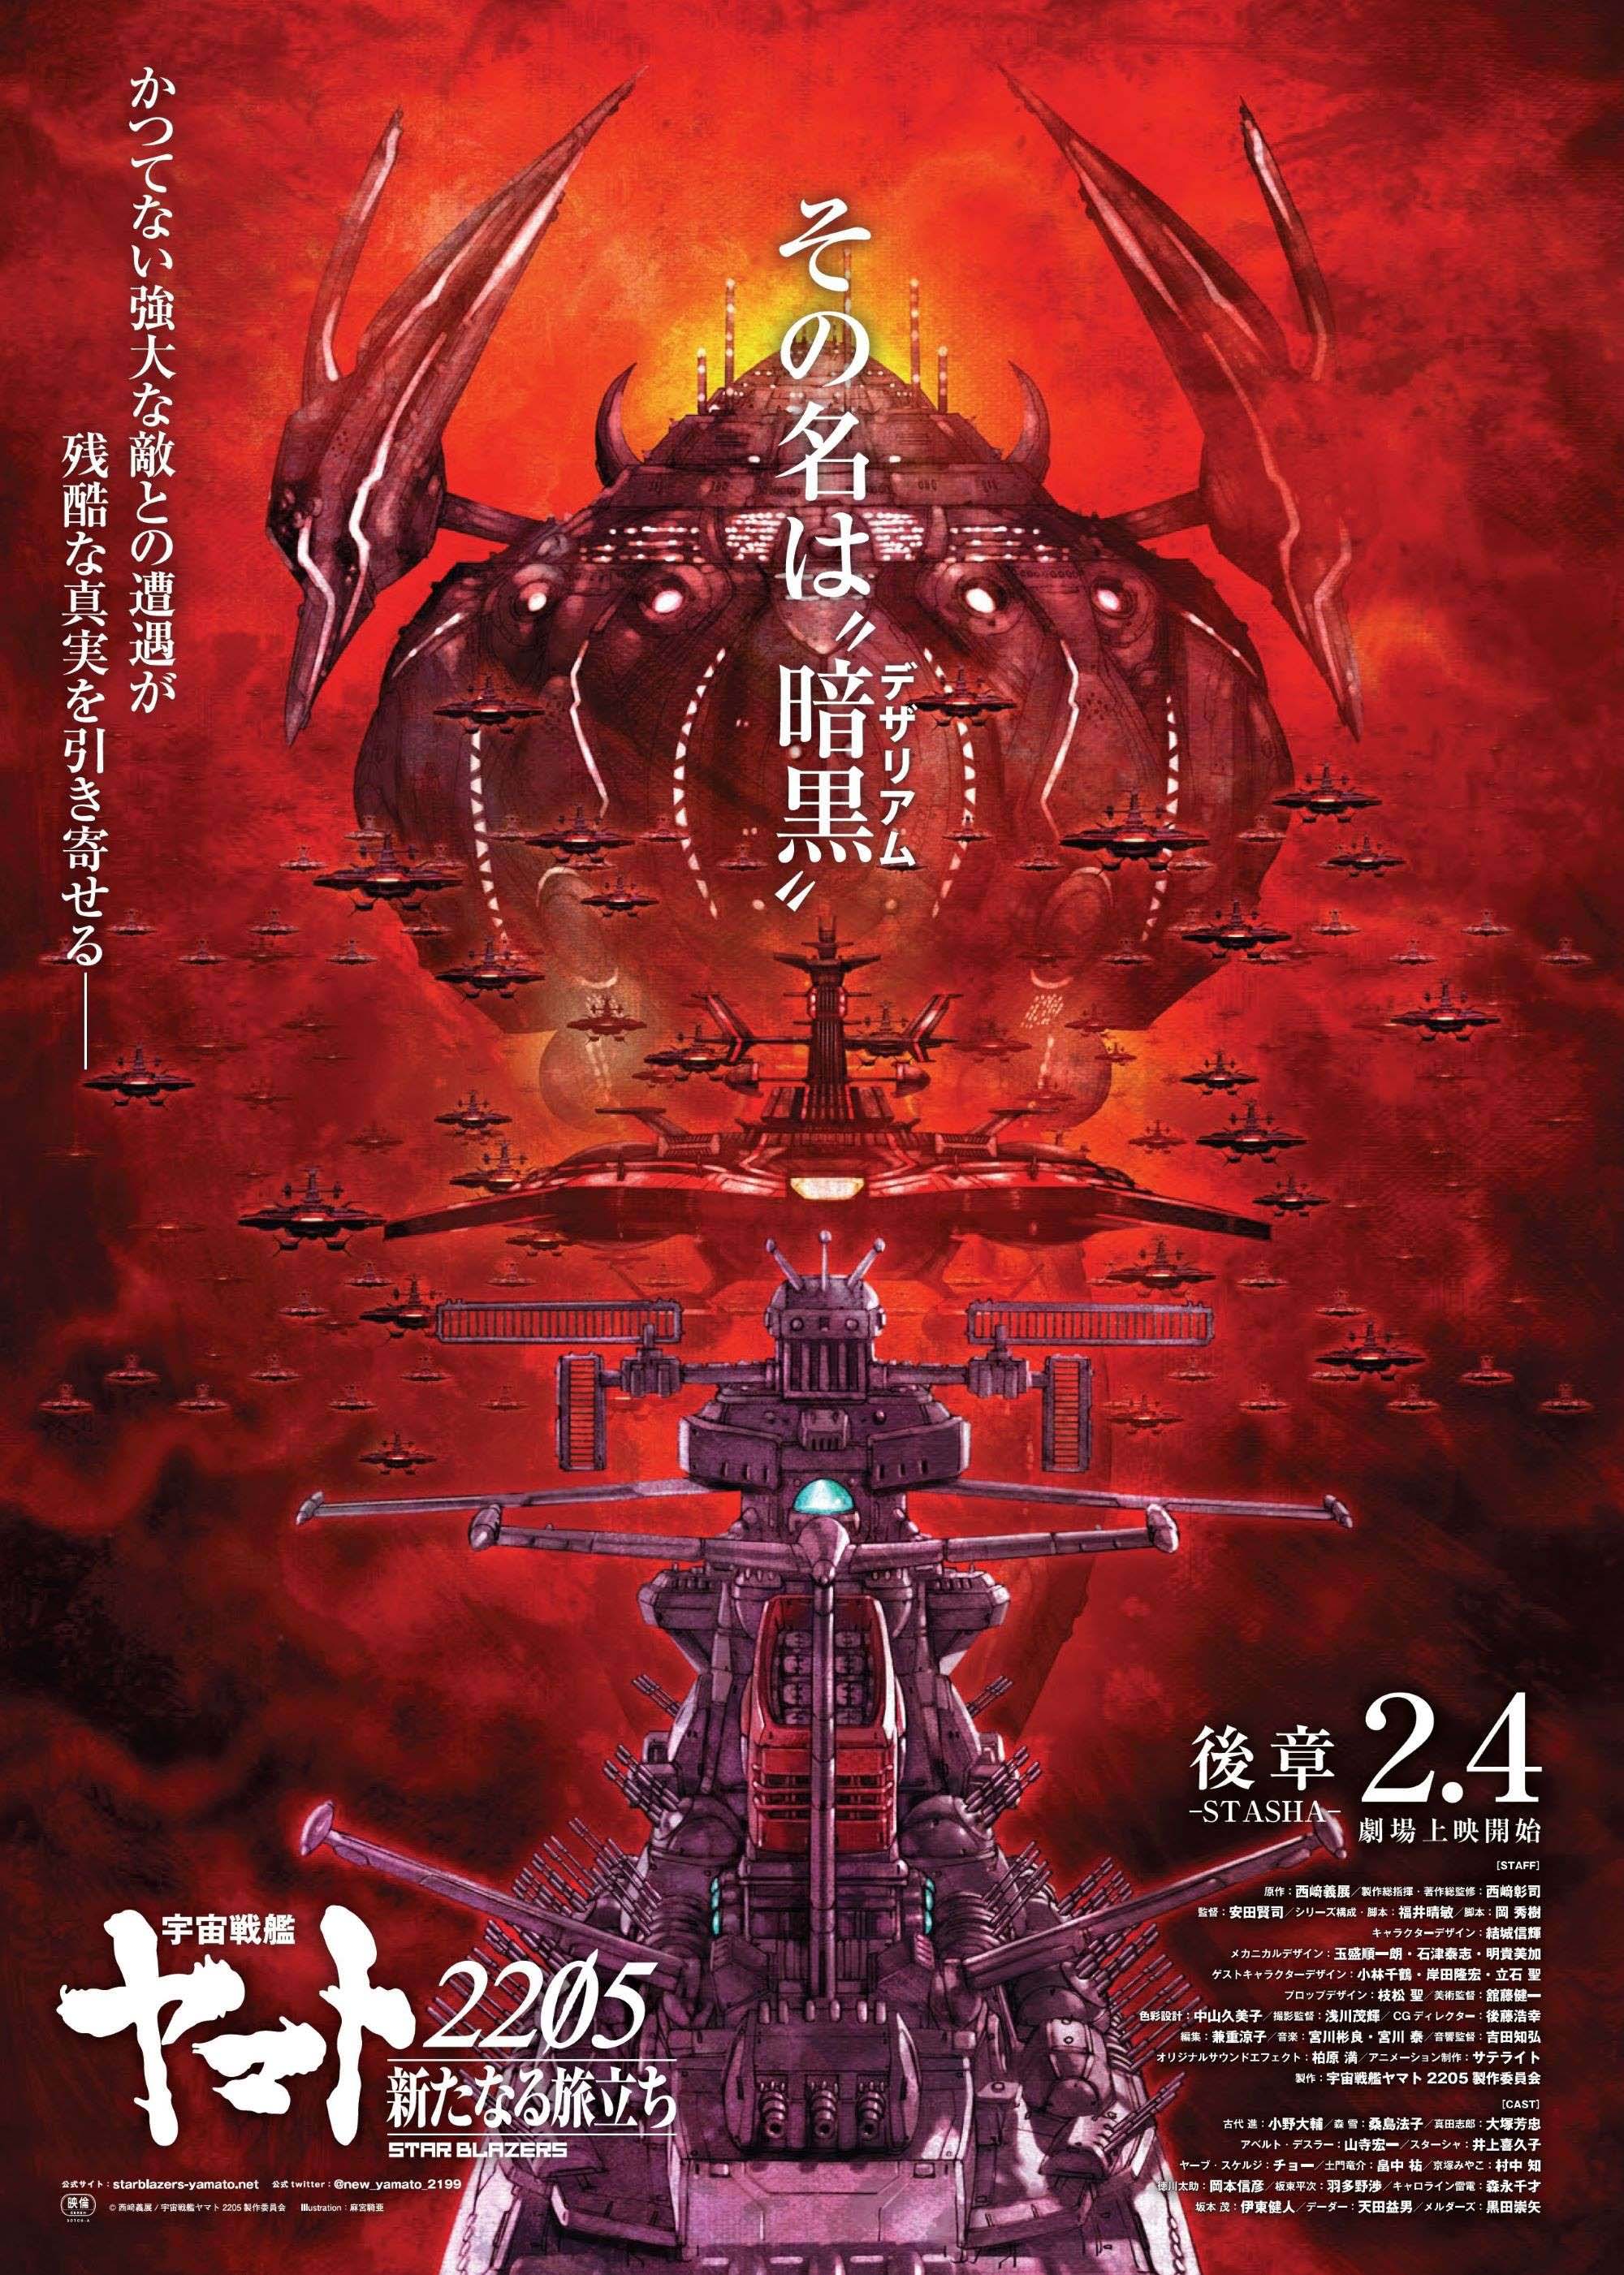 宇宙戦艦ヤマト25 新たなる旅立ち Blu Ray Dvd第2巻 3月29日発売